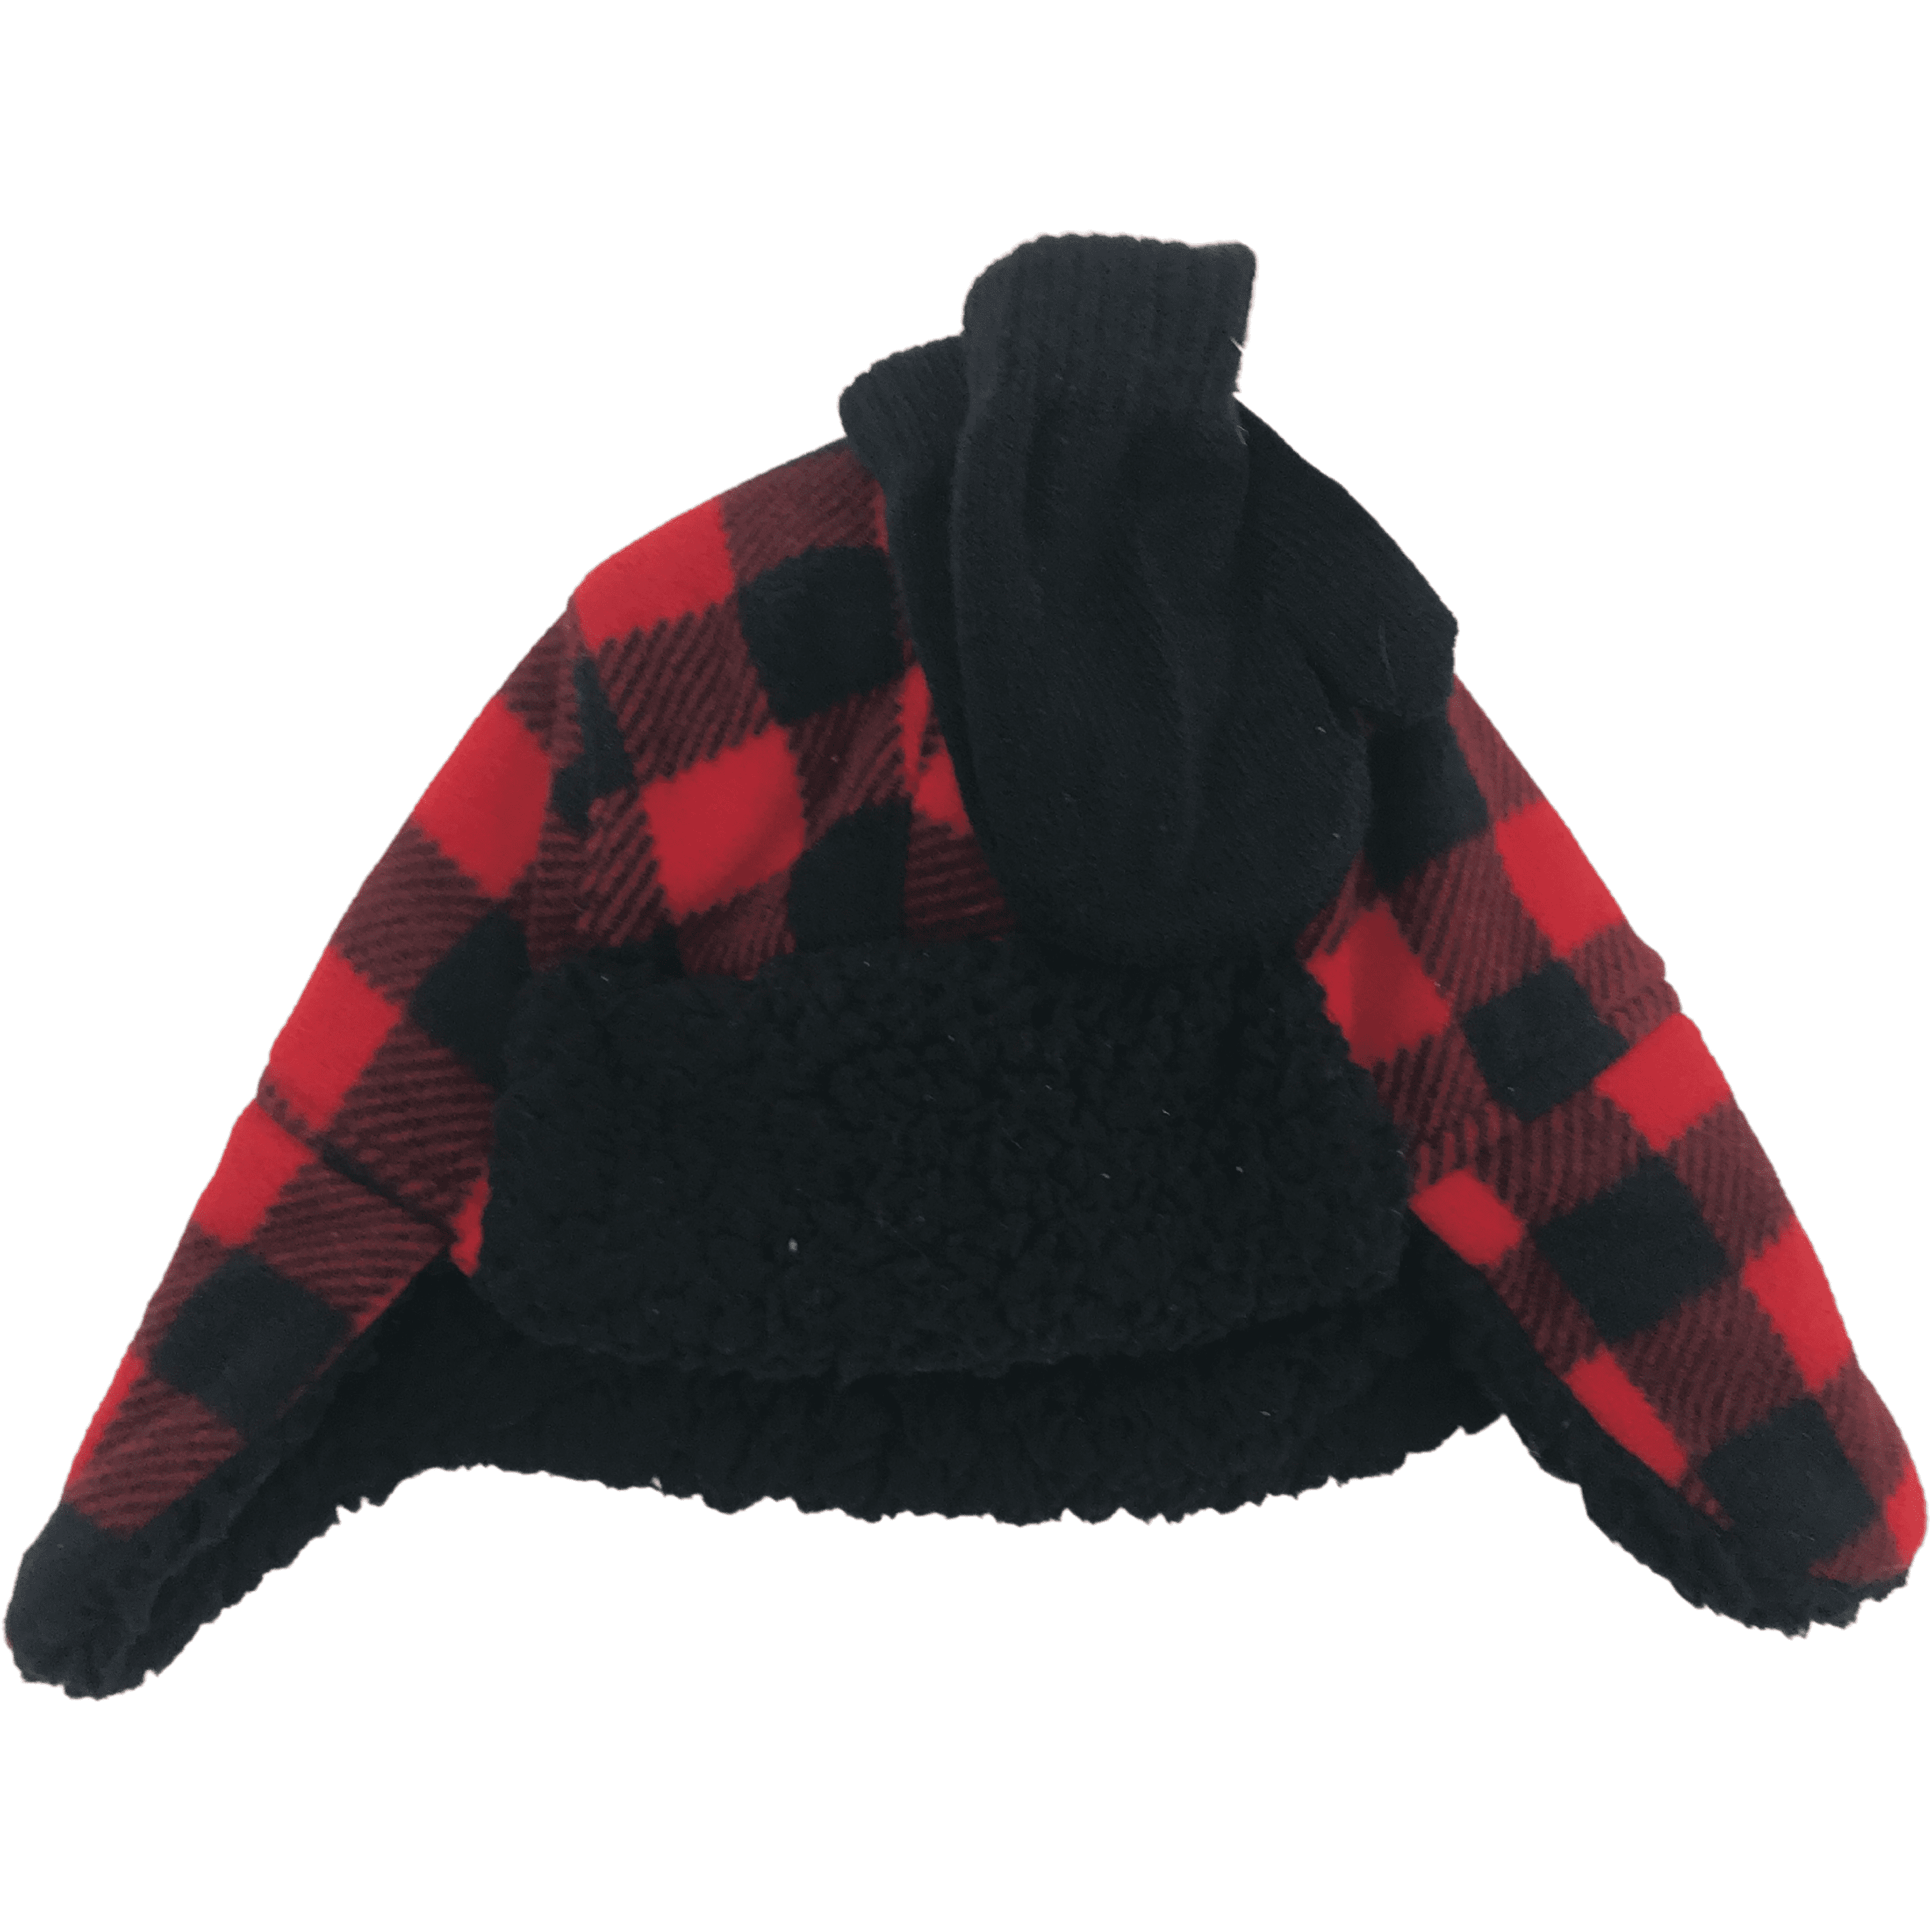 Children's Winter Hat & Glove Set / Red Plaid / Lightweight Mittens / Various Sizes